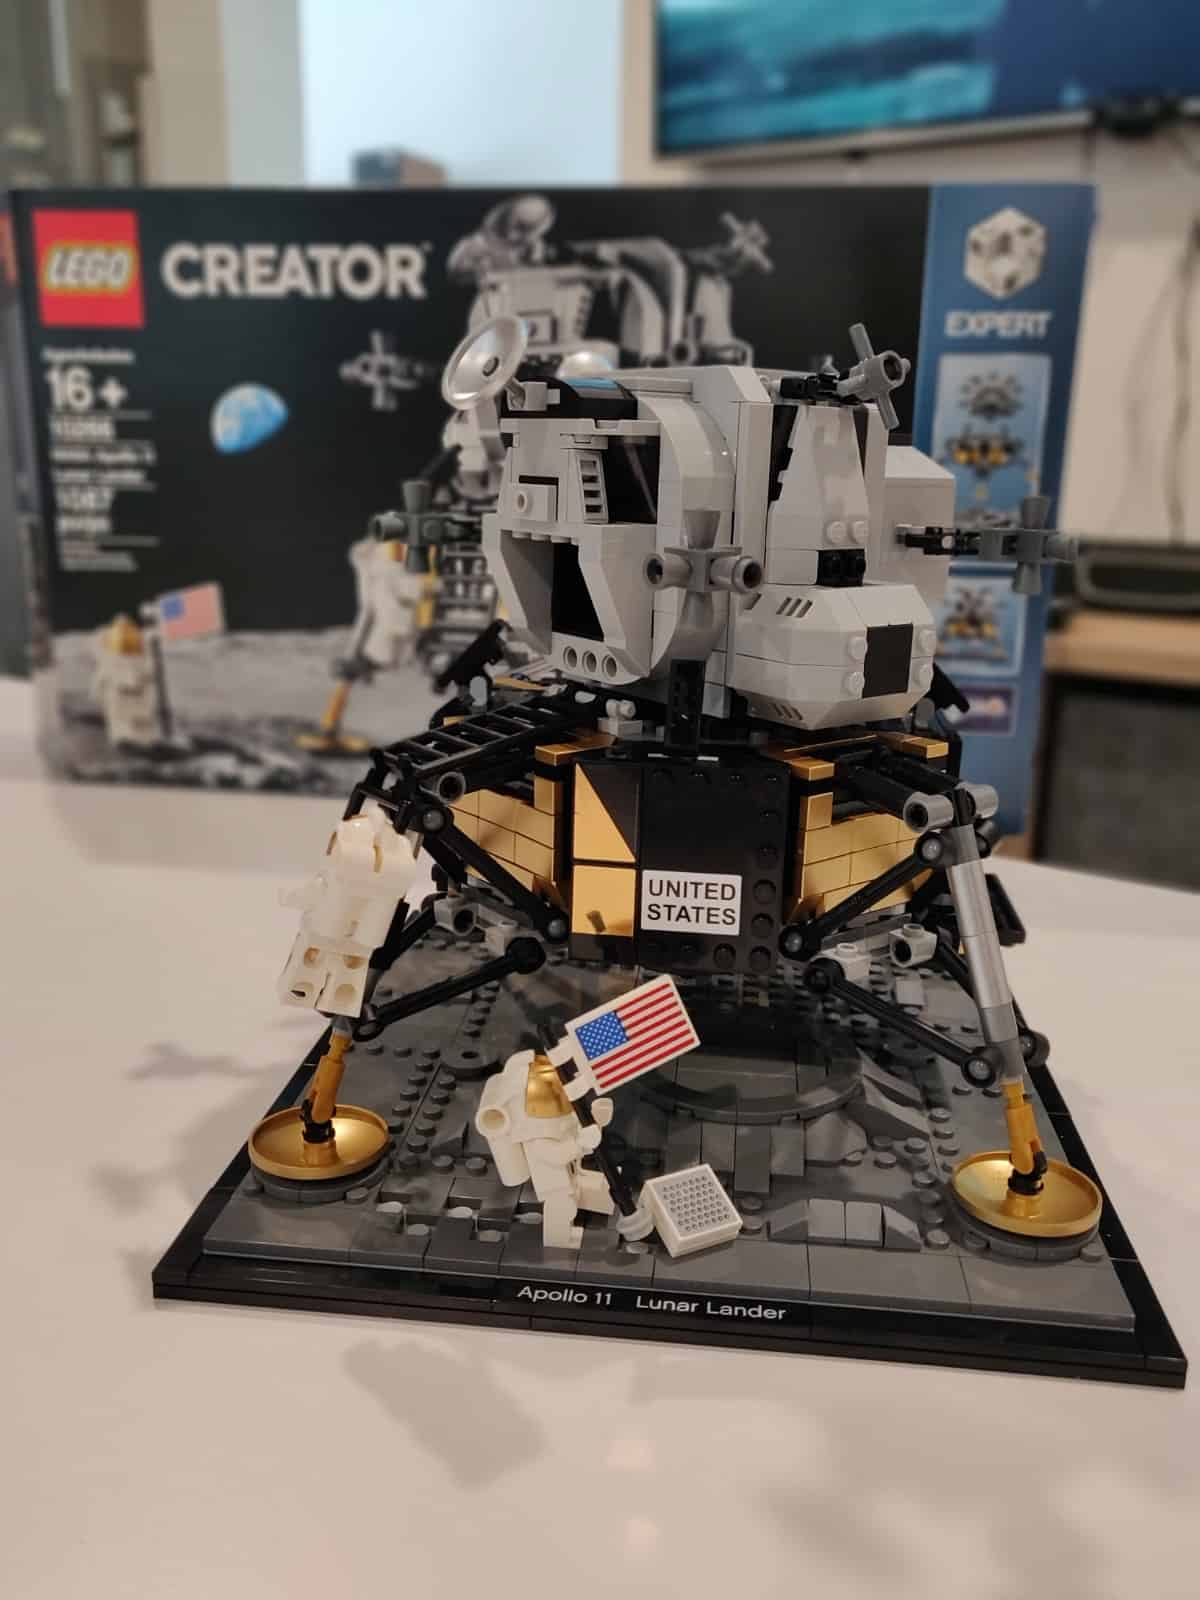 Lego lunar lander fully assembled